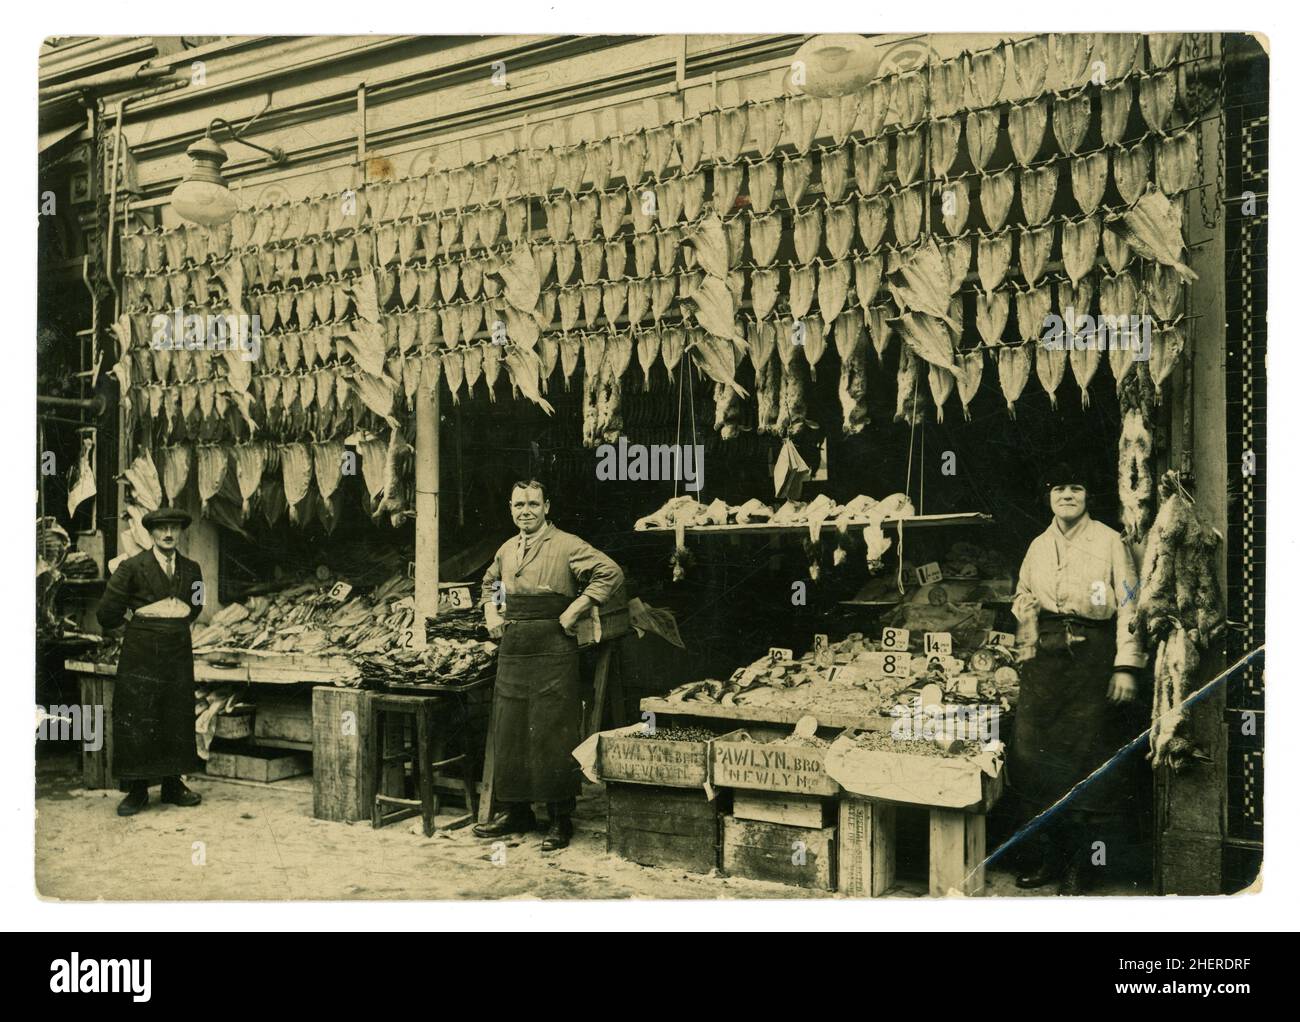 Originalfoto aus dem frühen 20. Jahrhundert aus der Zeit WW1 von Fischhändlern, Fischfilets, die vor dem Laden aufgehängt wurden, Kisten mit Schalentieren aus Newyln, Cornwall, in Holzkisten vor dem Stand in der Gegend von Lavender Hill in London, Großbritannien, um 1914-1918. Stockfoto